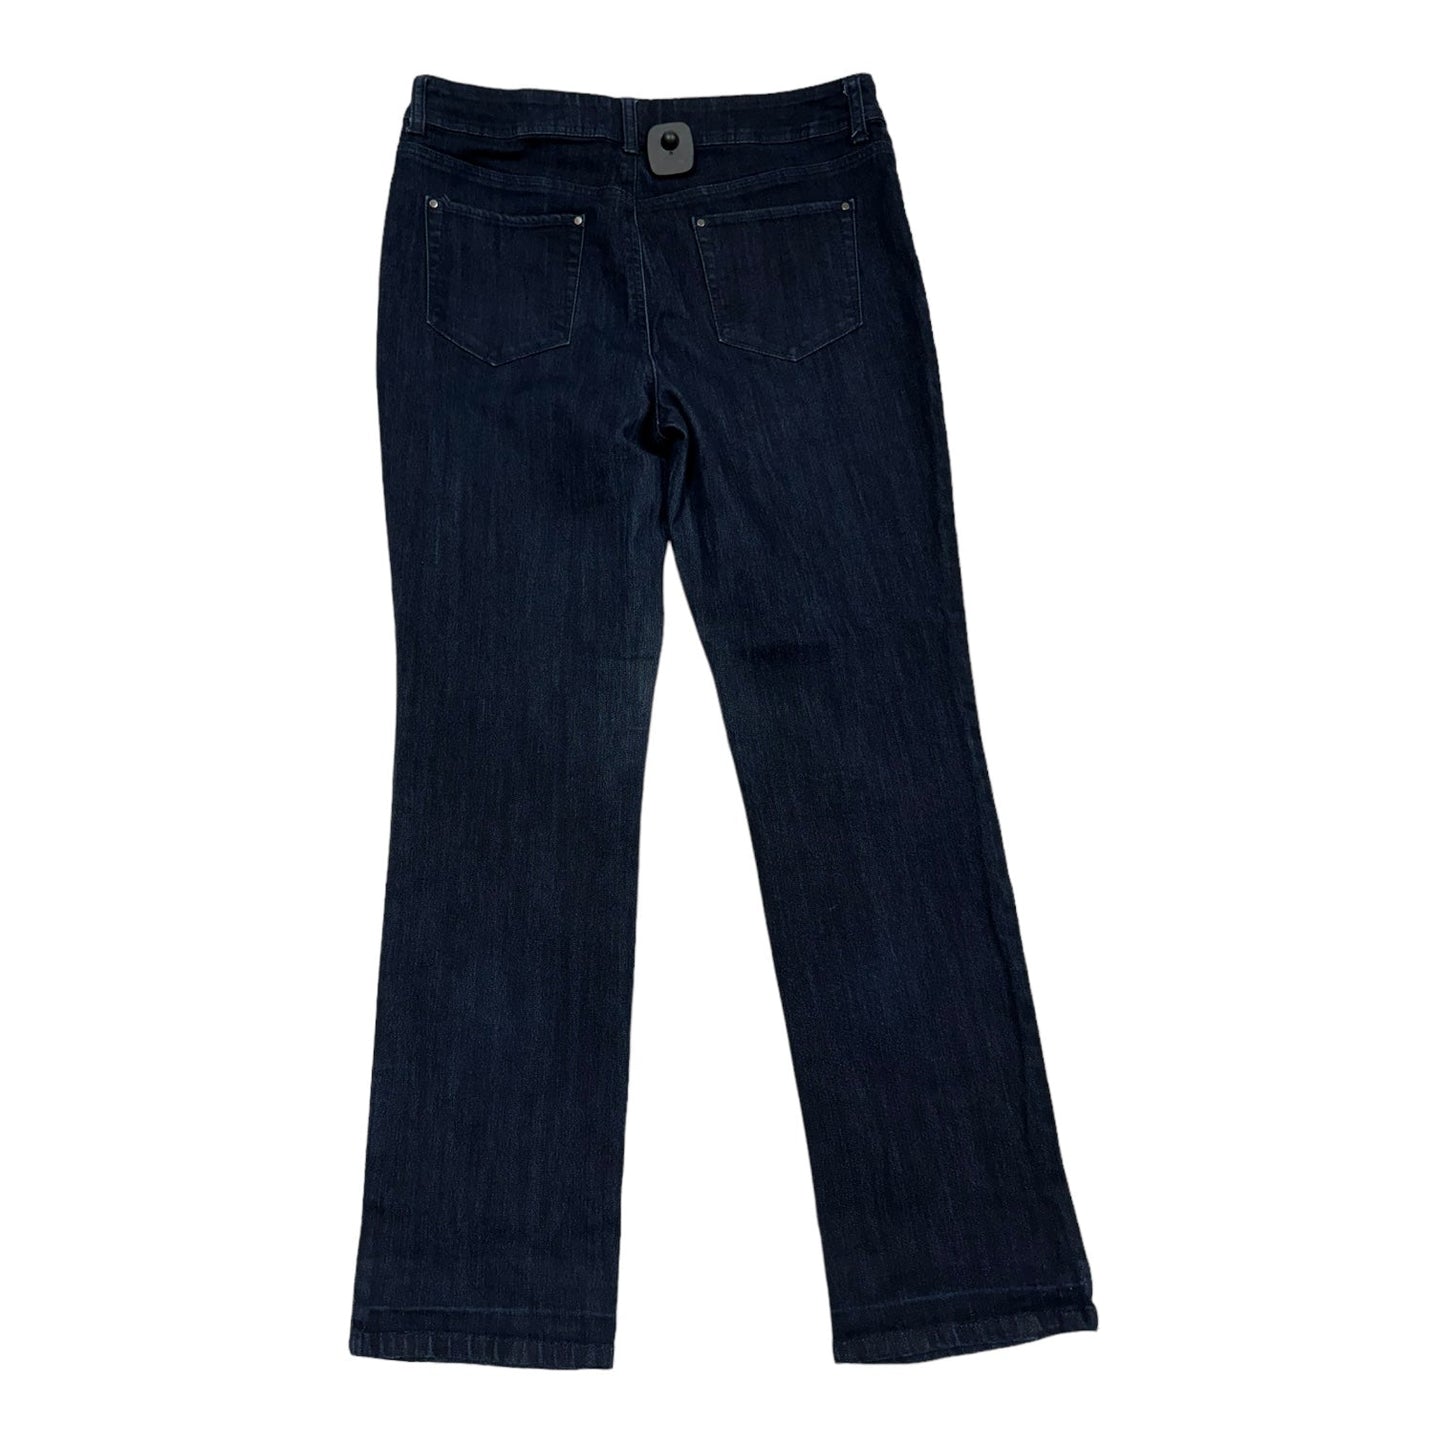 Blue Denim Jeans Skinny Chicos, Size 8